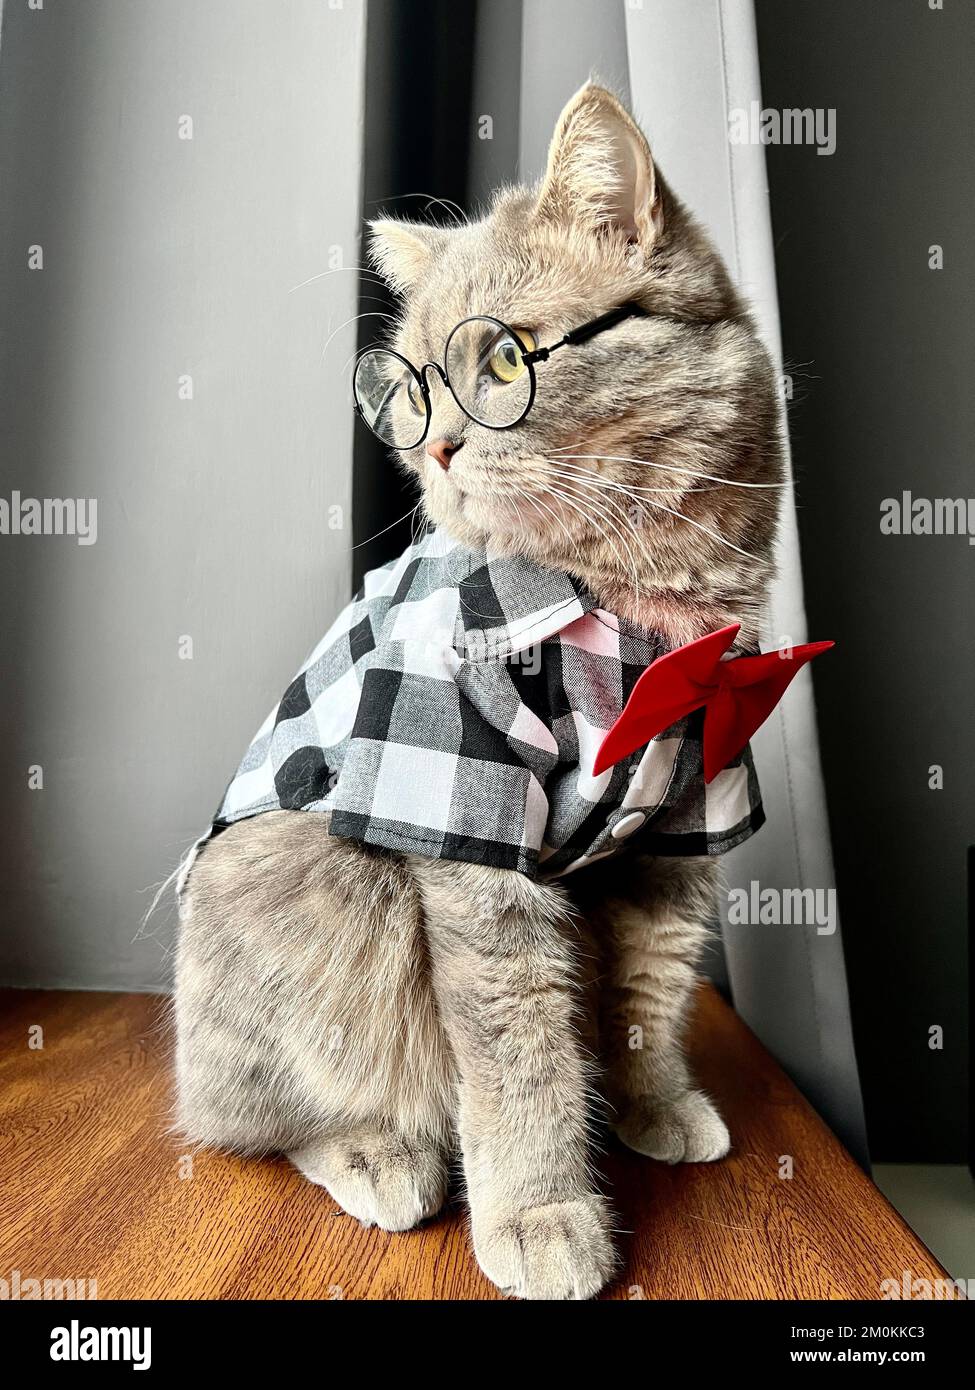 Eine schottische geradohrige graue Katze mit Brille, einem schwarz-weißen Hemd und einer roten Krawatte sieht an den Feiertagen wie ein Gentleman aus. Haustiere in einem gemütlichen, modernen Apartment Stockfoto